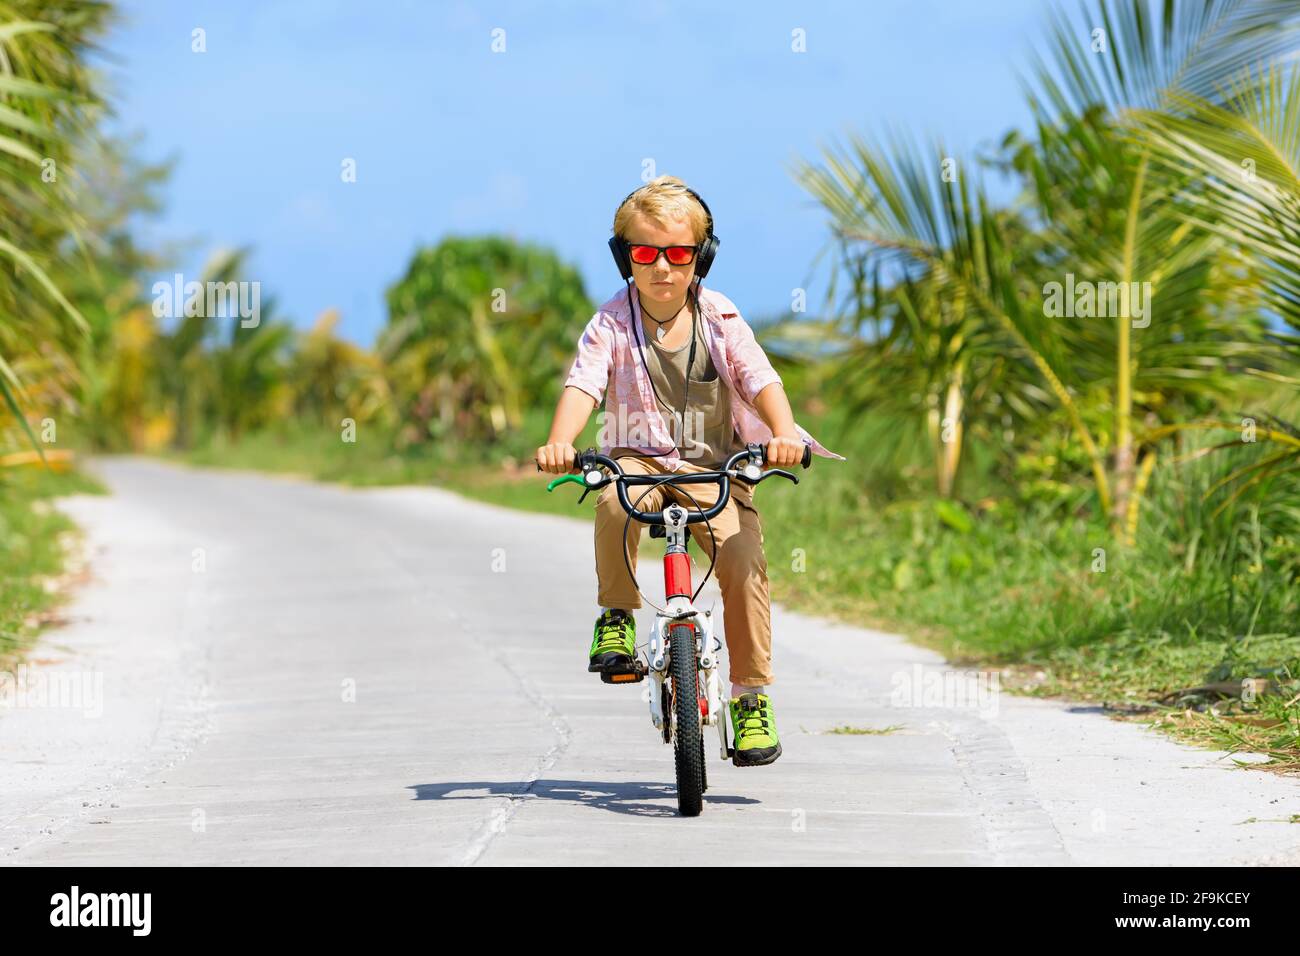 Randonnée à vélo. Jeune enfant pilote dans un casque et des lunettes de soleil à vélo. Un enfant heureux s'amuse sur le sentier. Mode de vie familial actif, sport Banque D'Images